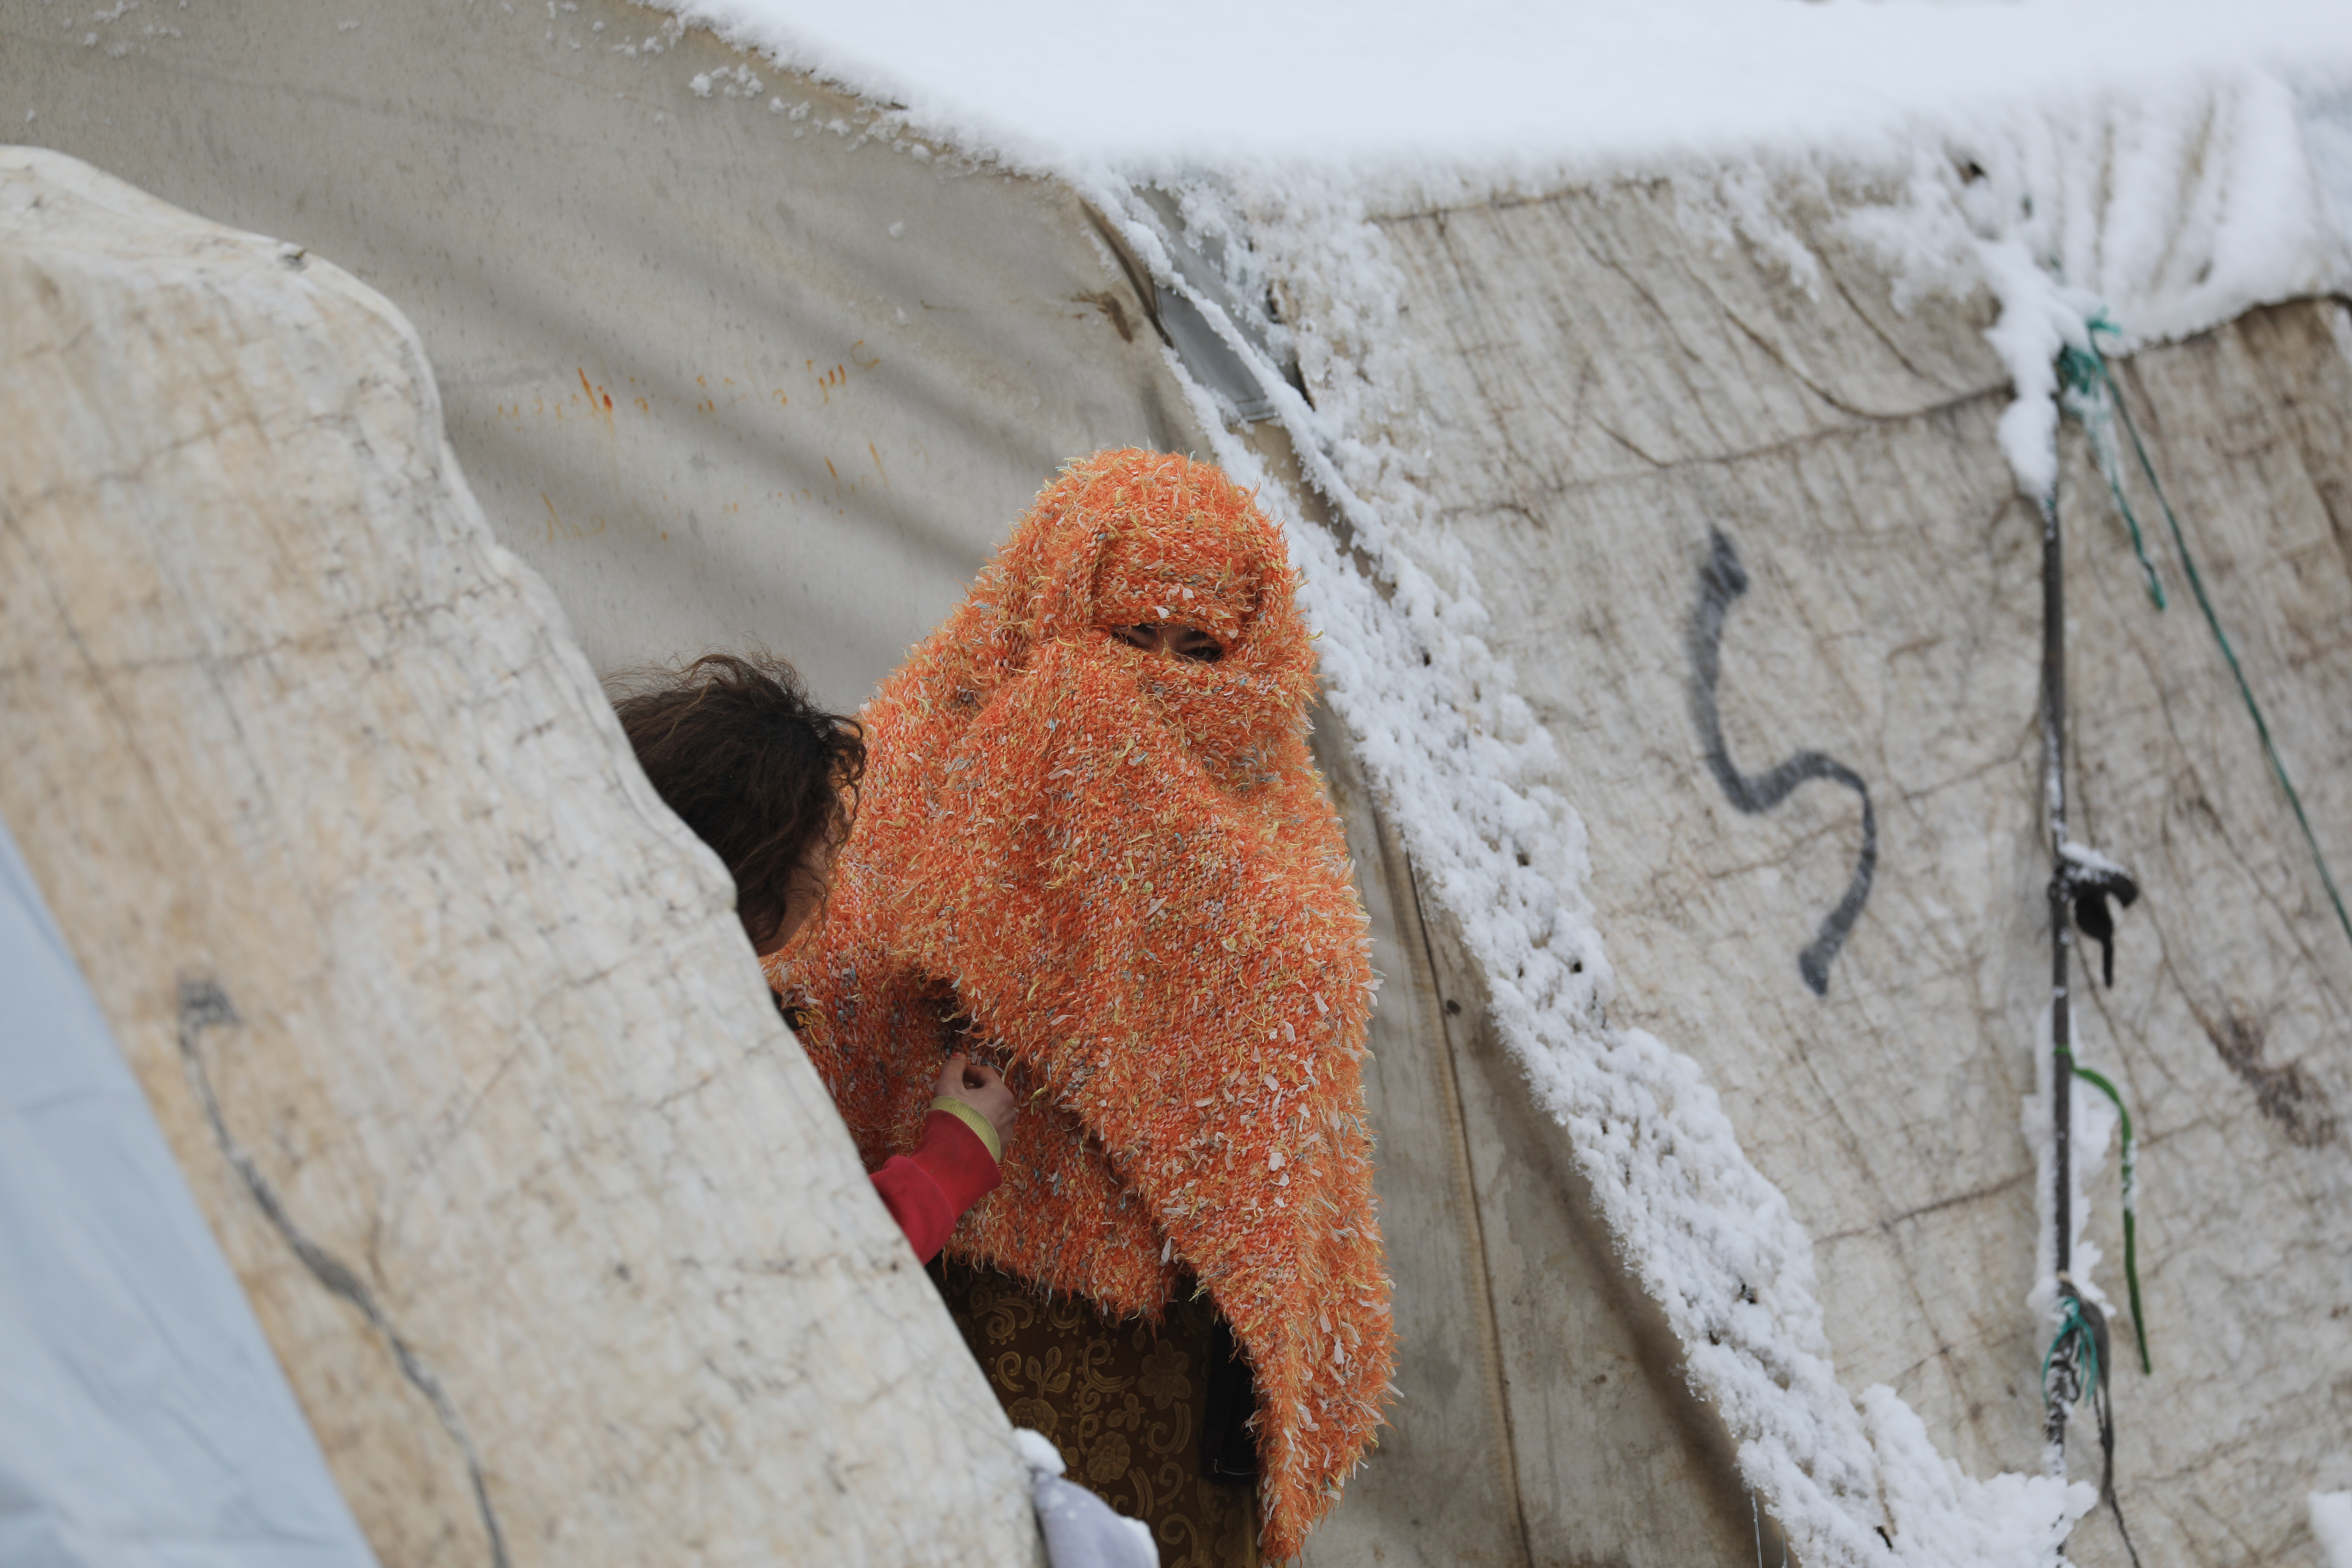 وضعیت دشوار مردم شمال سوریه در سرمای هوا و برف